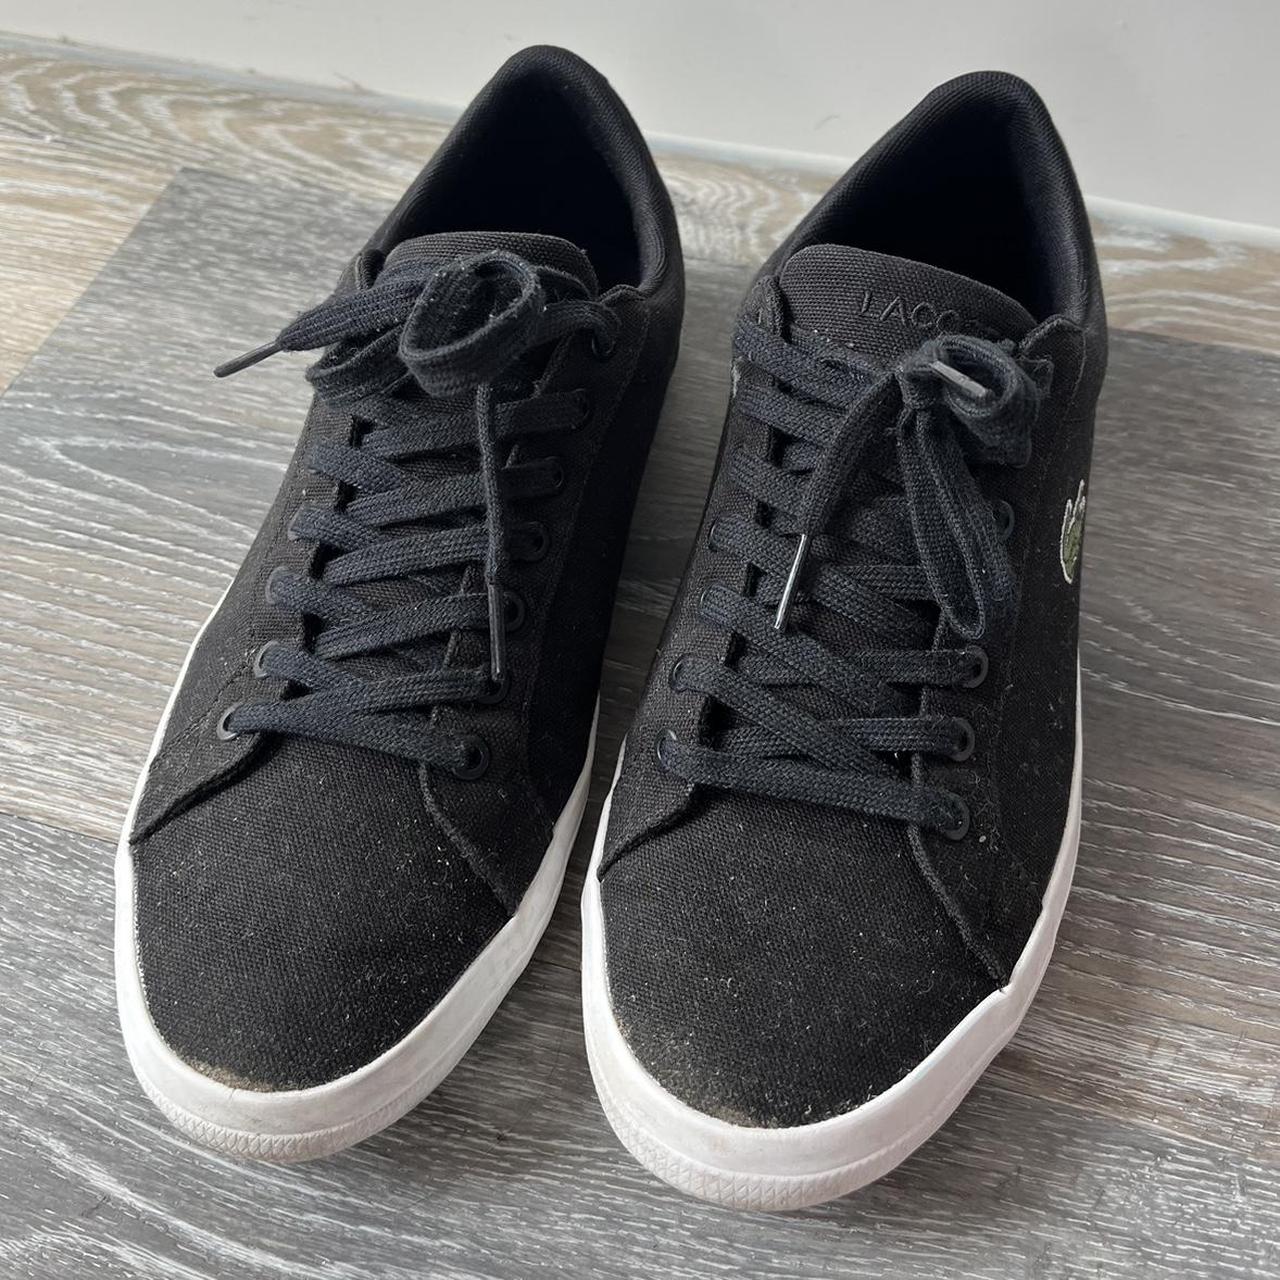 Men’s Black Lacoste Shoes -Brand: Lacoste -... - Depop